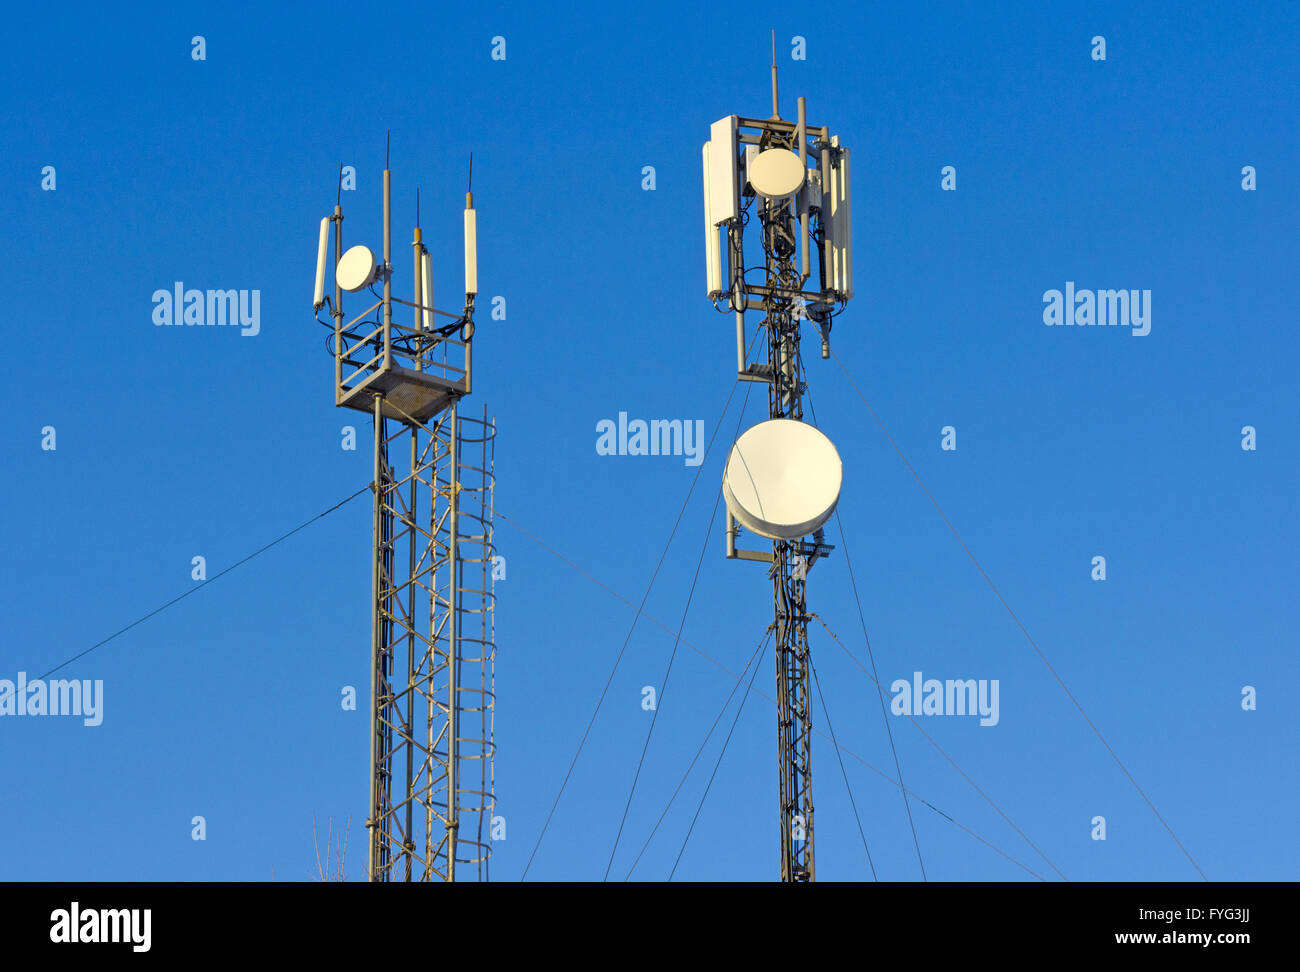 La tour de télévision et de communication pour des signaux de téléphone mobile Banque D'Images